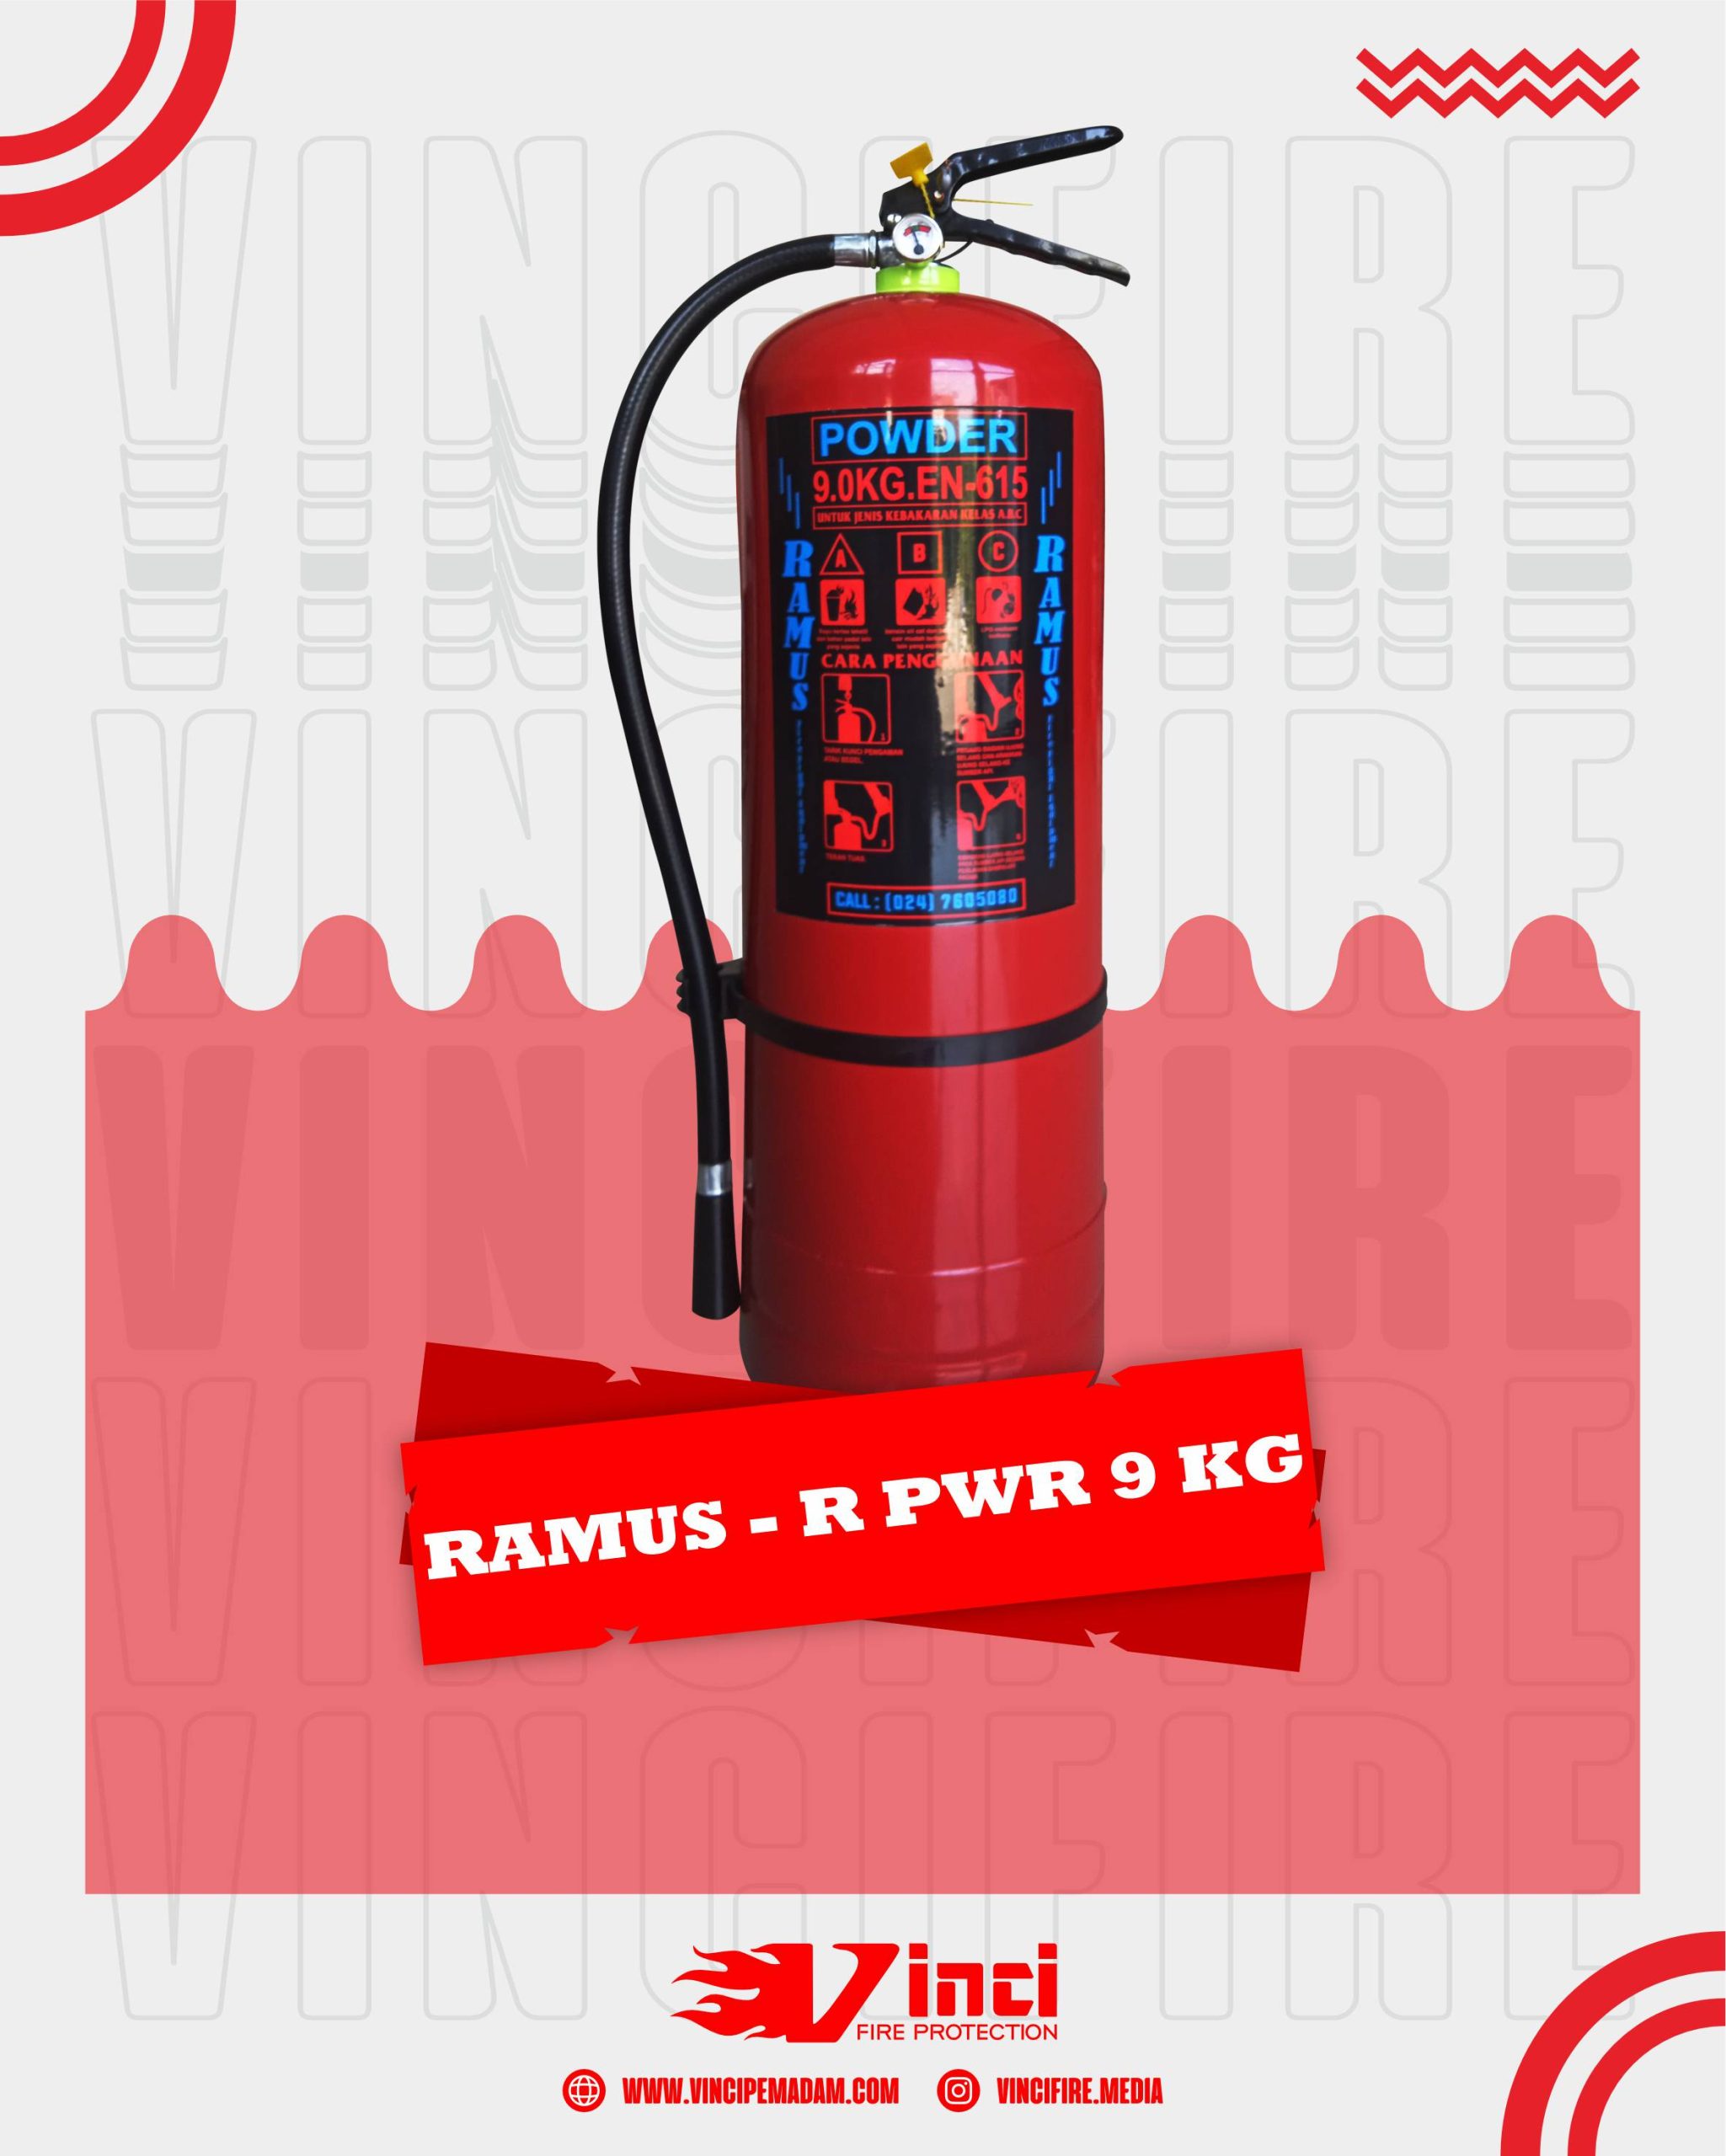 Ramus – R PWR 9